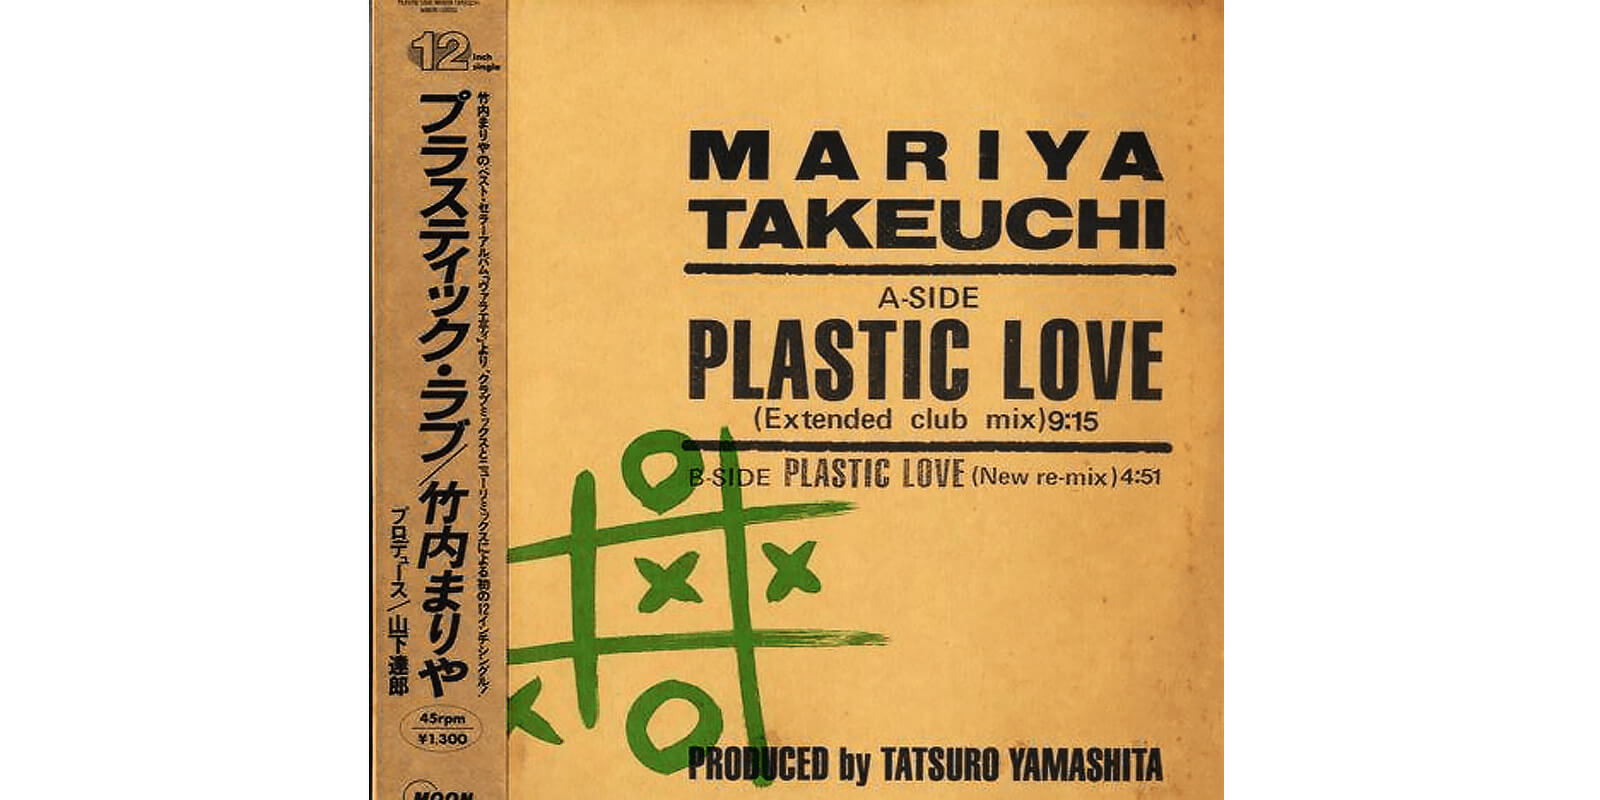 One of the original album covers of Plastic Love.